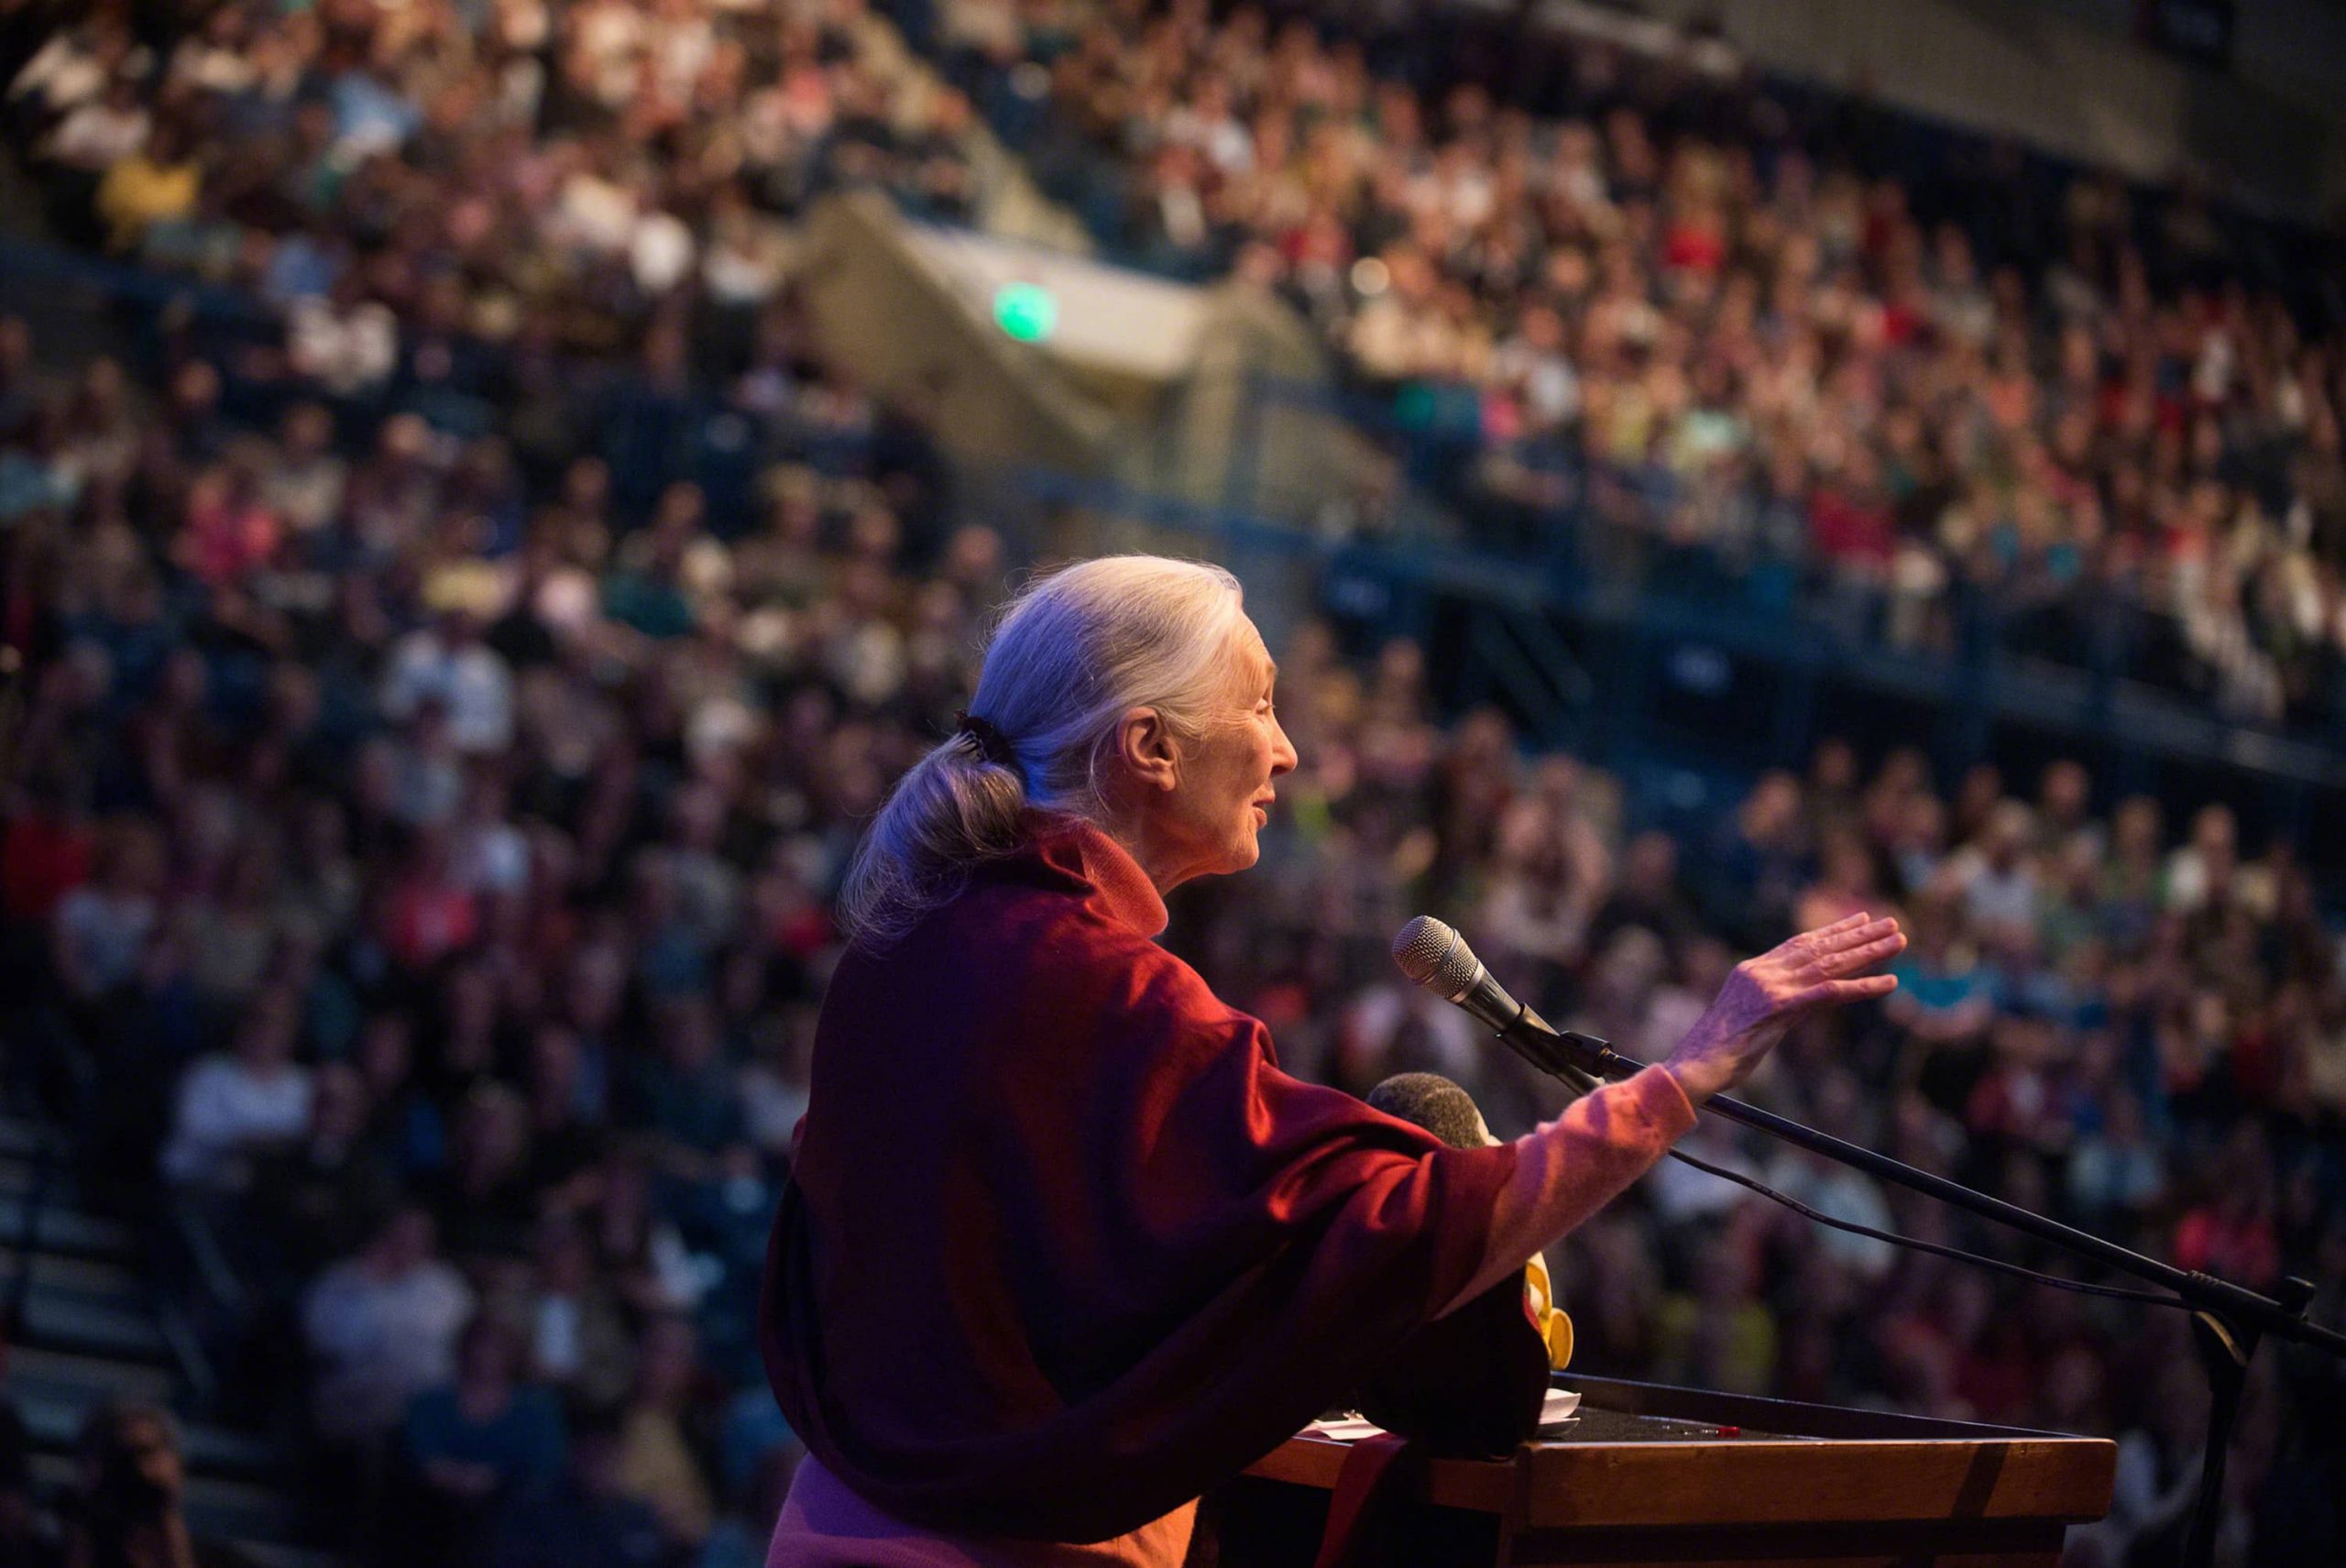 Concours d’éloquence pour une paix durable: Transmettre la voix de Jane Goodall pour les décennies à venir